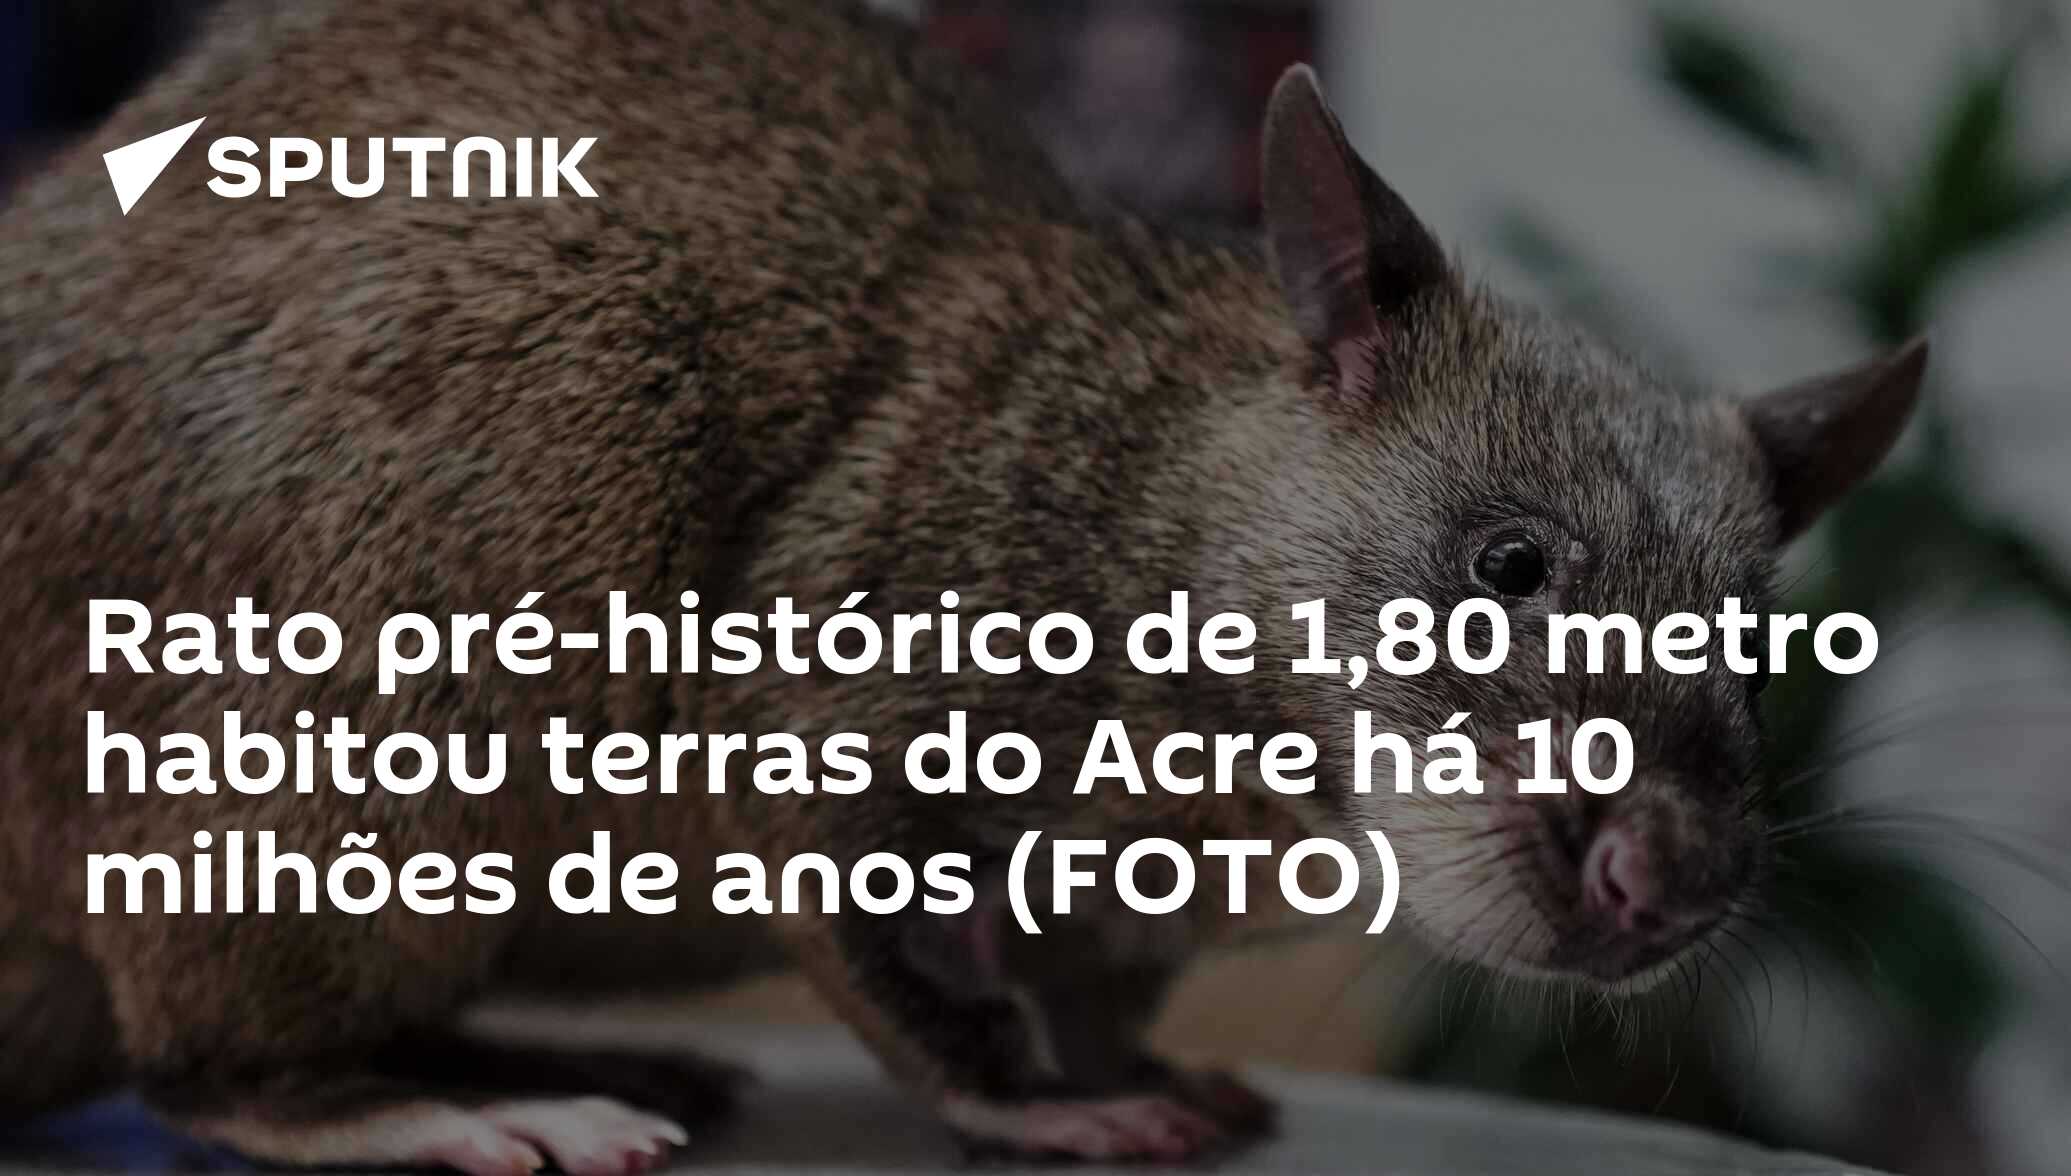 Rato pré-histórico de 1,80 metro habitou terras do Acre há 10 milhões de  anos (FOTO) - 12.02.2020, Sputnik Brasil